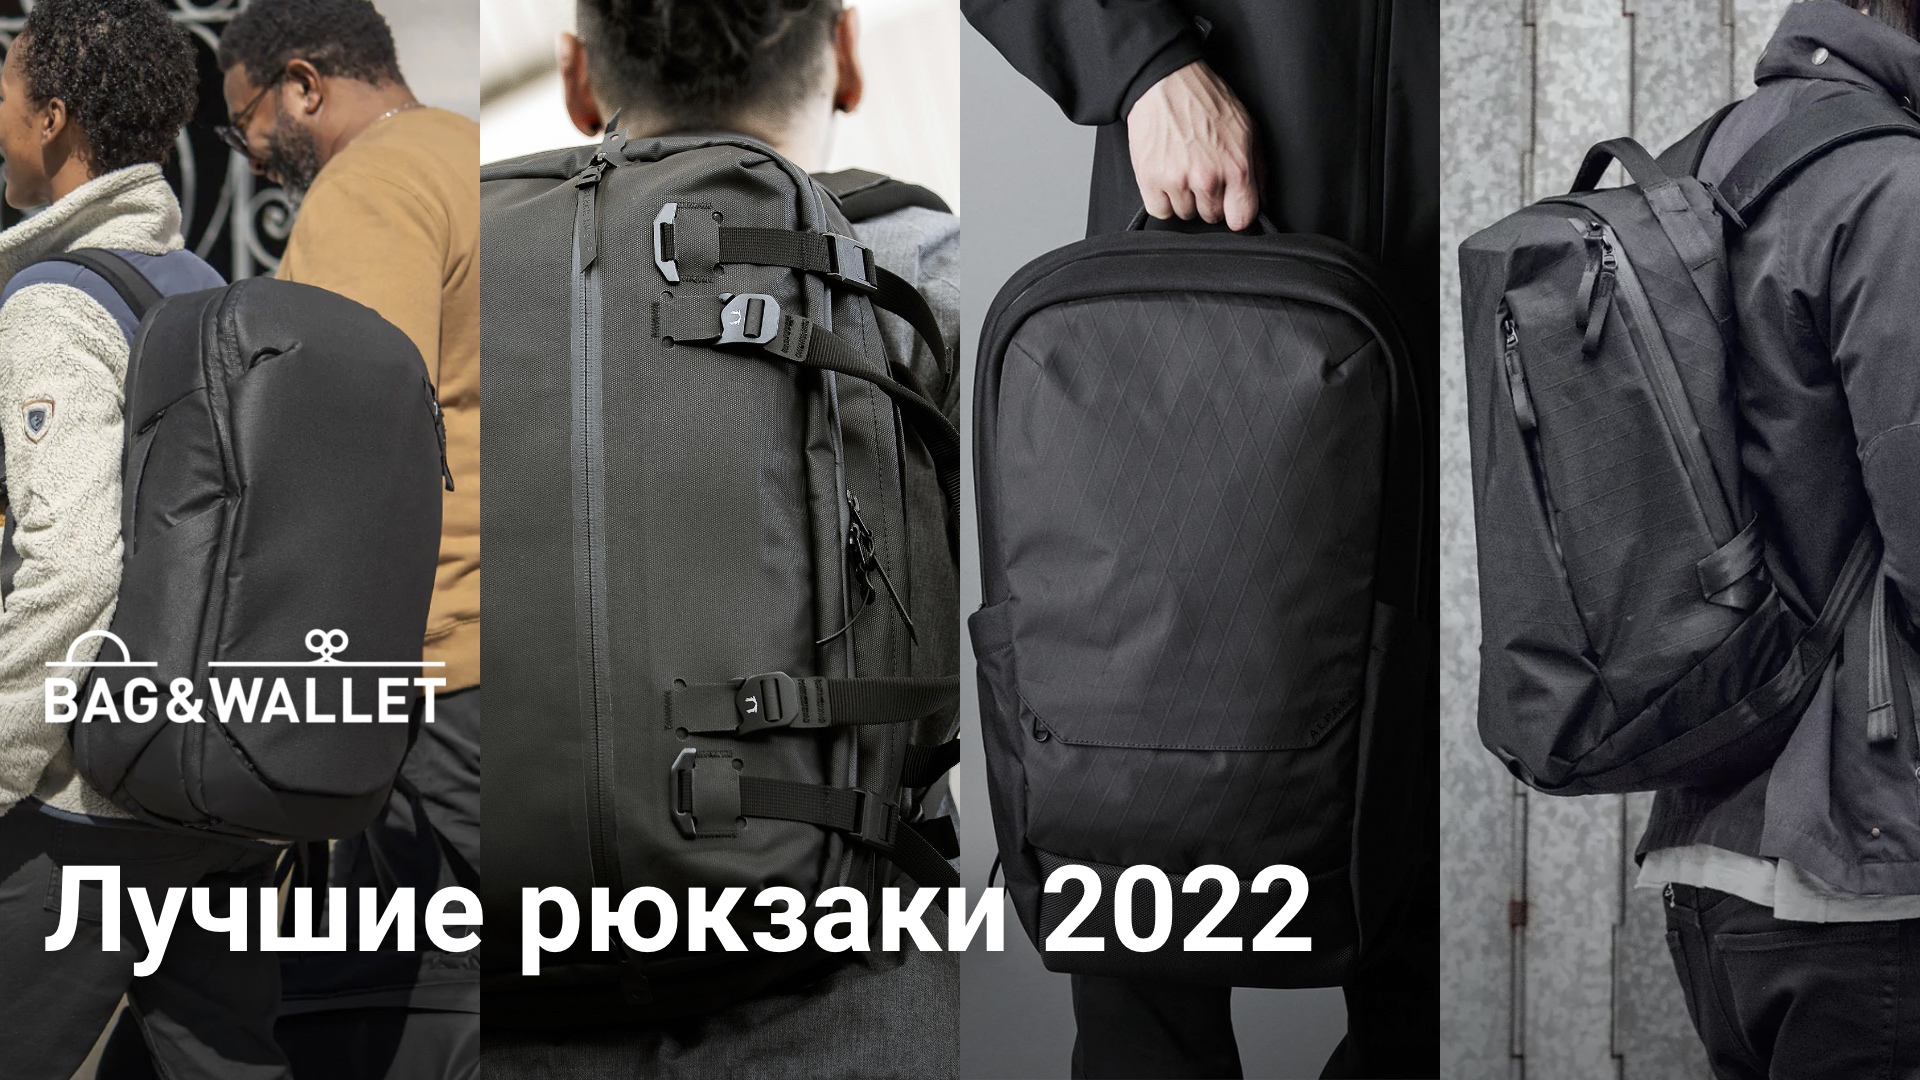 Спортивные мужские рюкзаки купить по низким ценам в интернет-магазине webmaster-korolev.ru